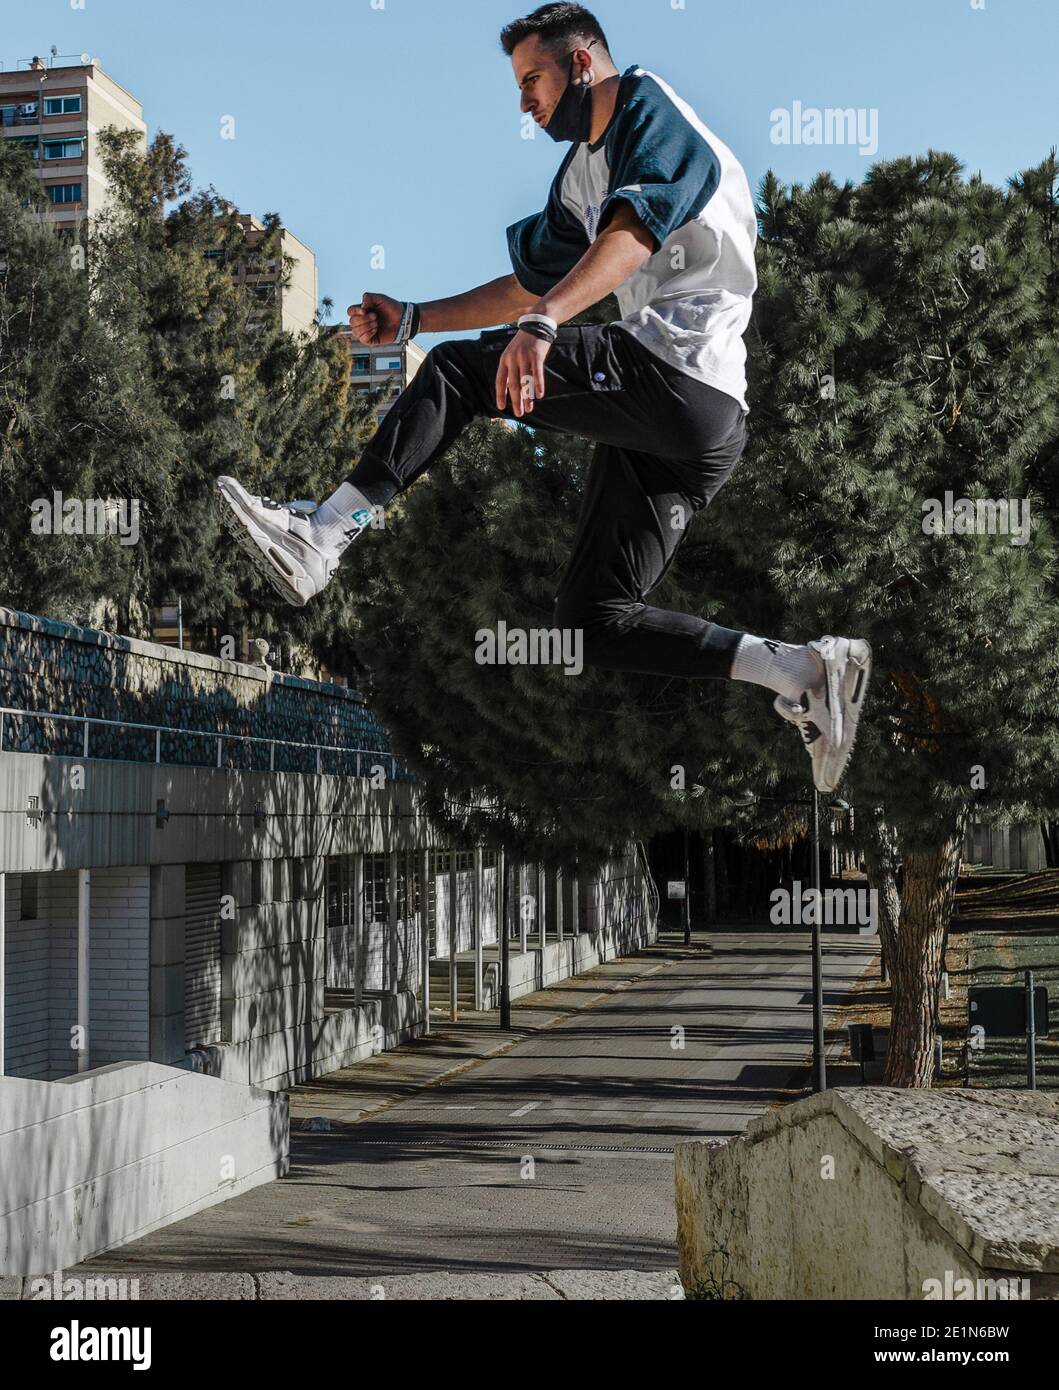 un giovane che salta da un muro in un parco urbano. Parco di allenamento. Foto Stock